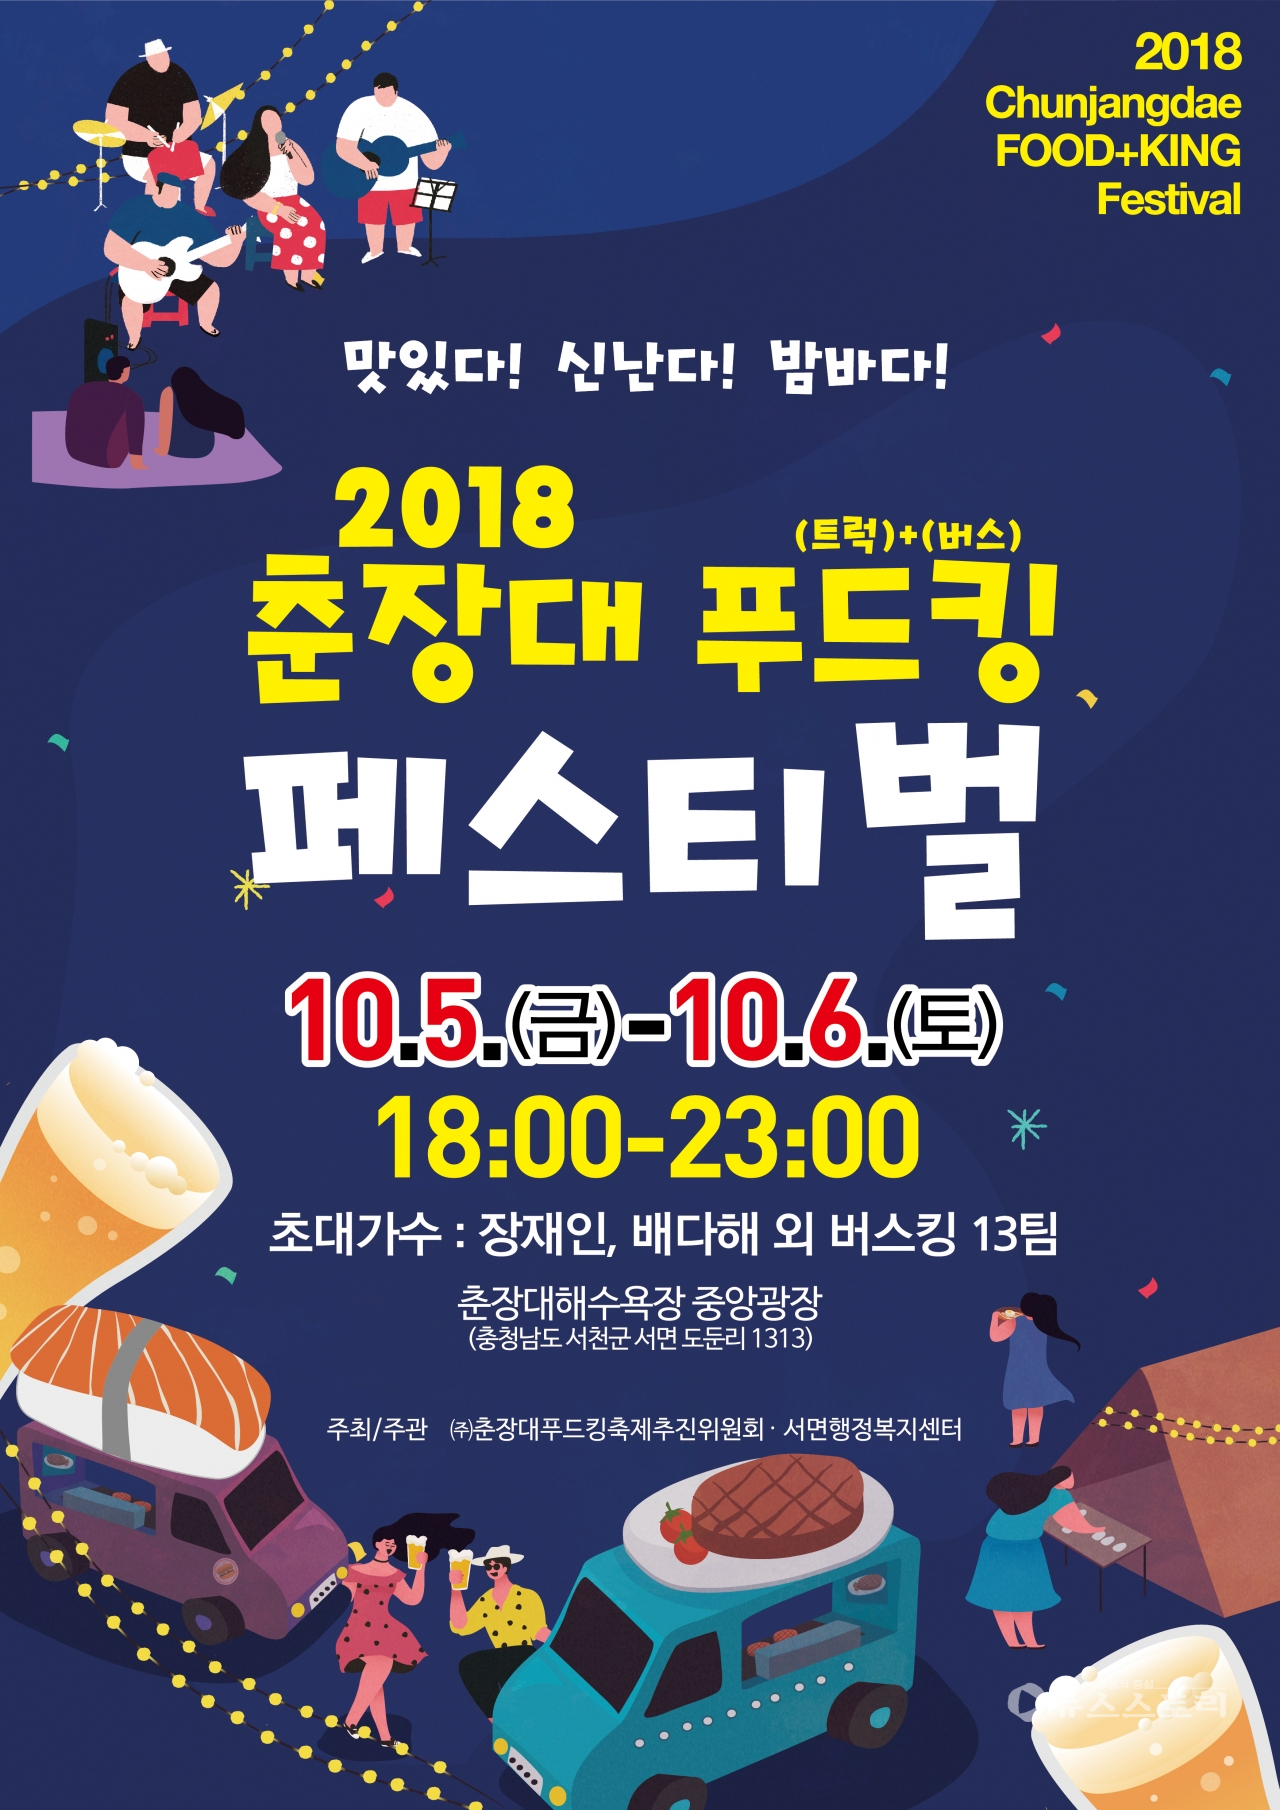 2018 춘장대 푸드킹 페스티벌 포스터